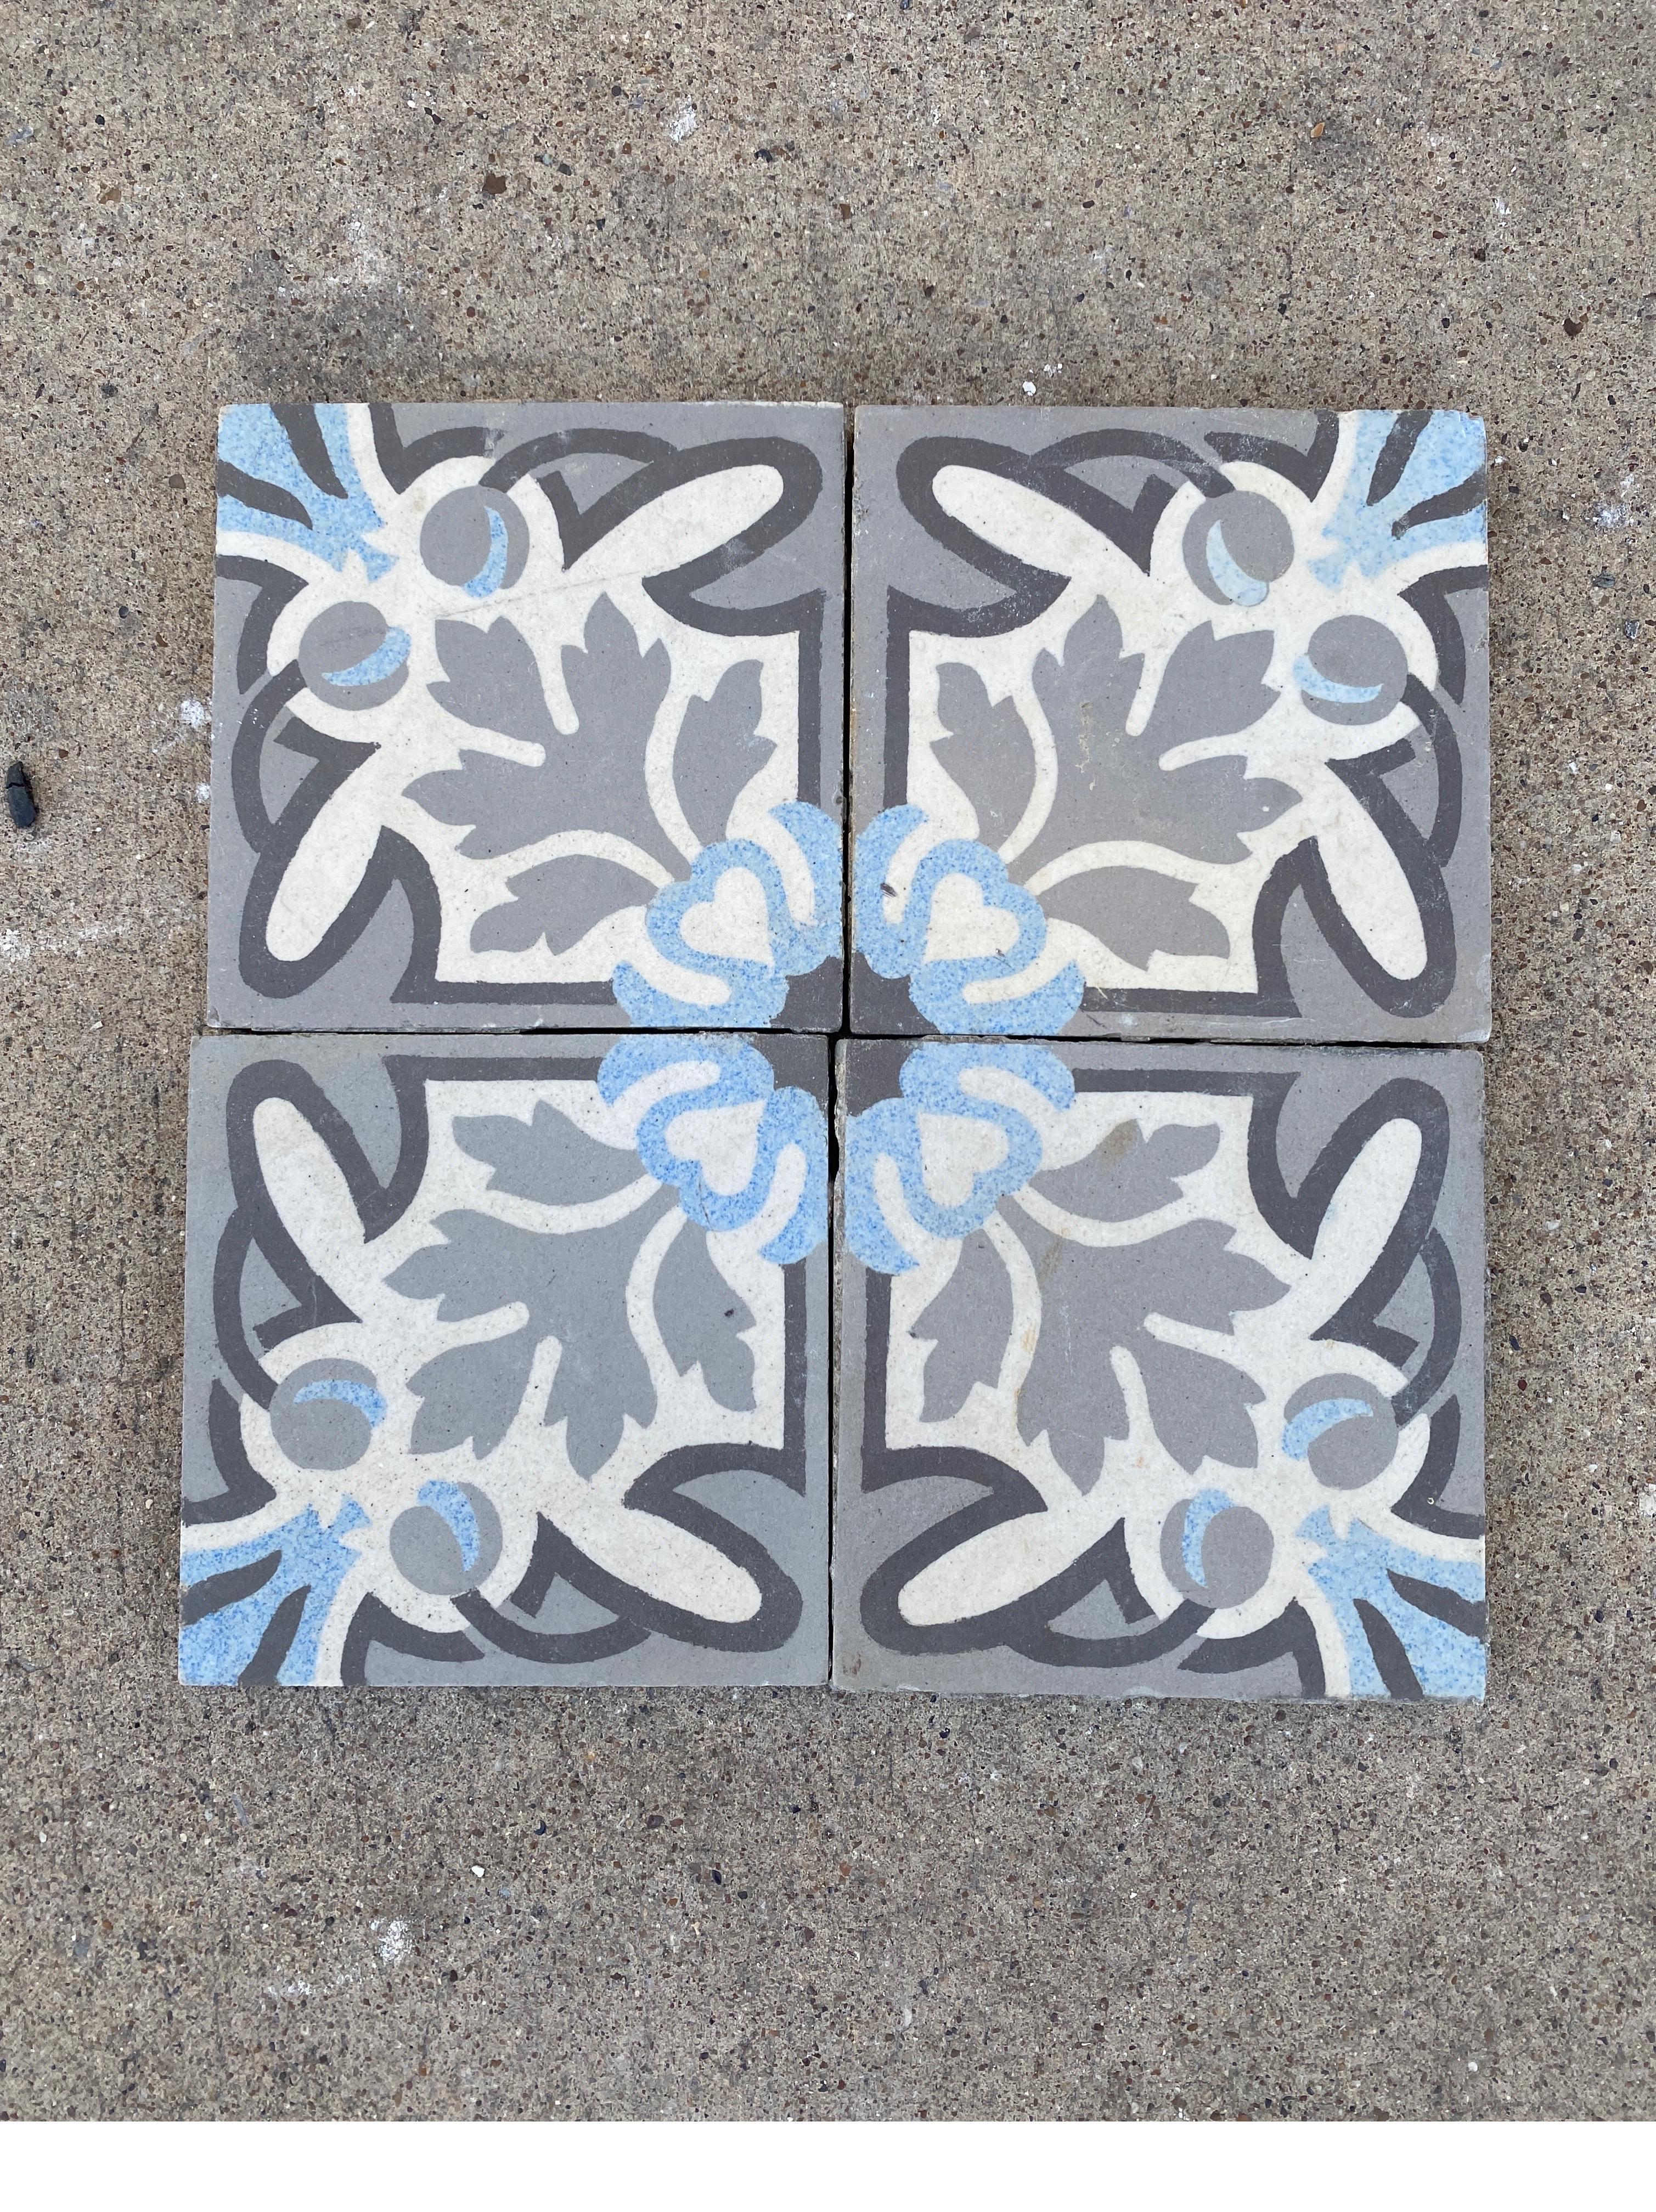 Beautiful blue and grey encaustic tiles.